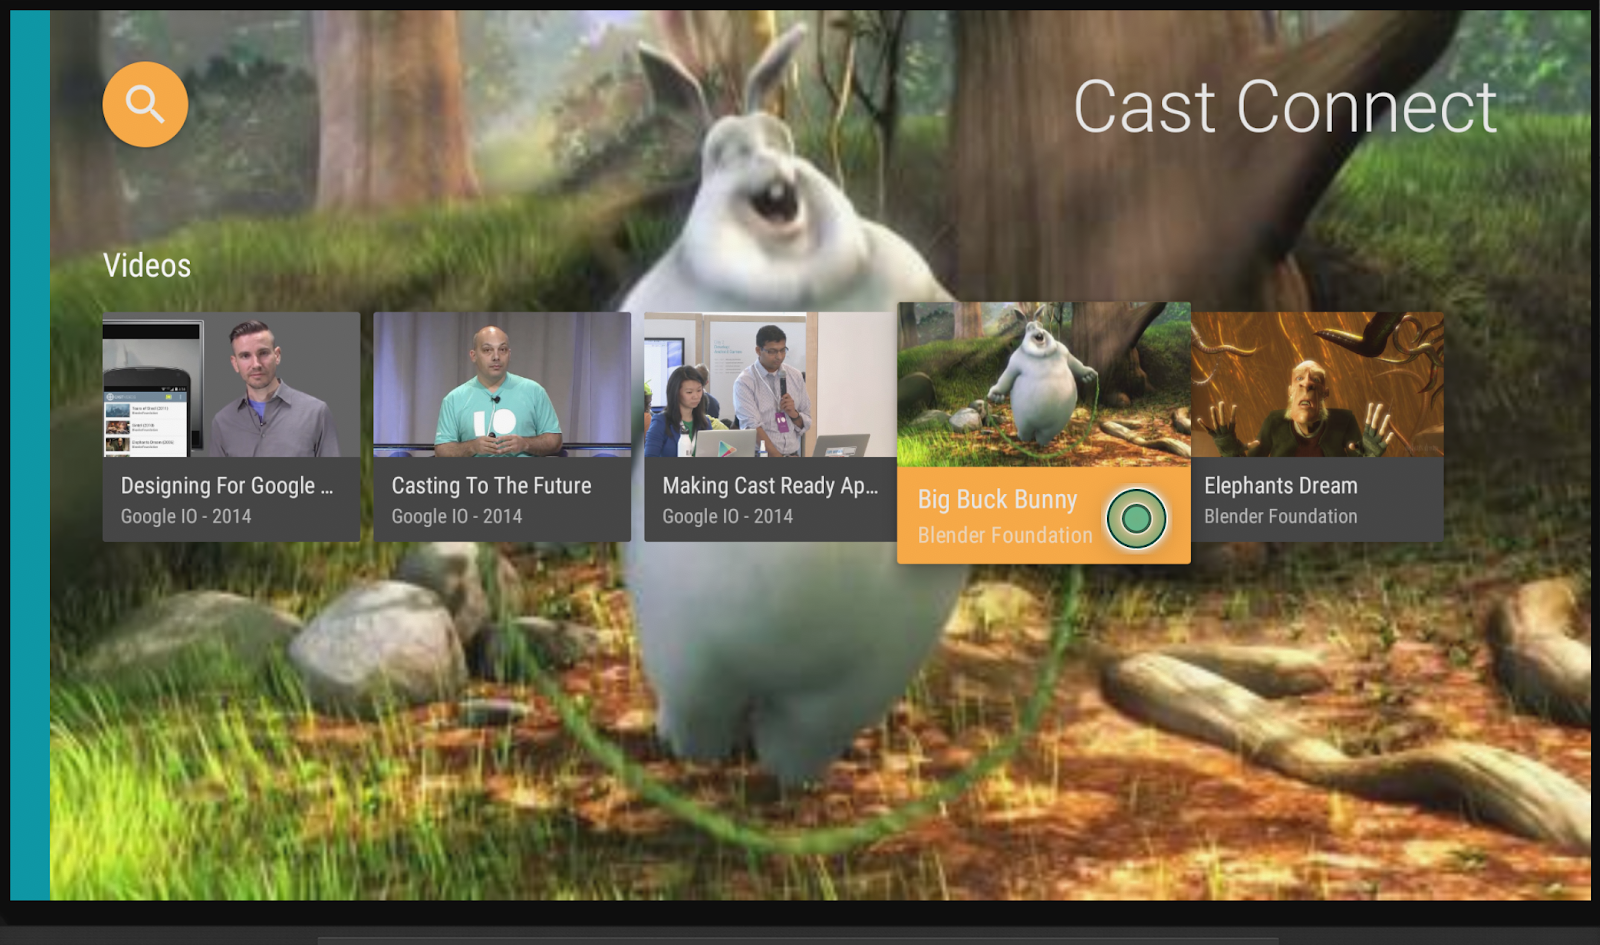 動画の全画面表示のプレビューに重なった一連の動画サムネイル（そのうちの 1 つがハイライト）の画像。右上に「Cast Connect」という単語が表示されています